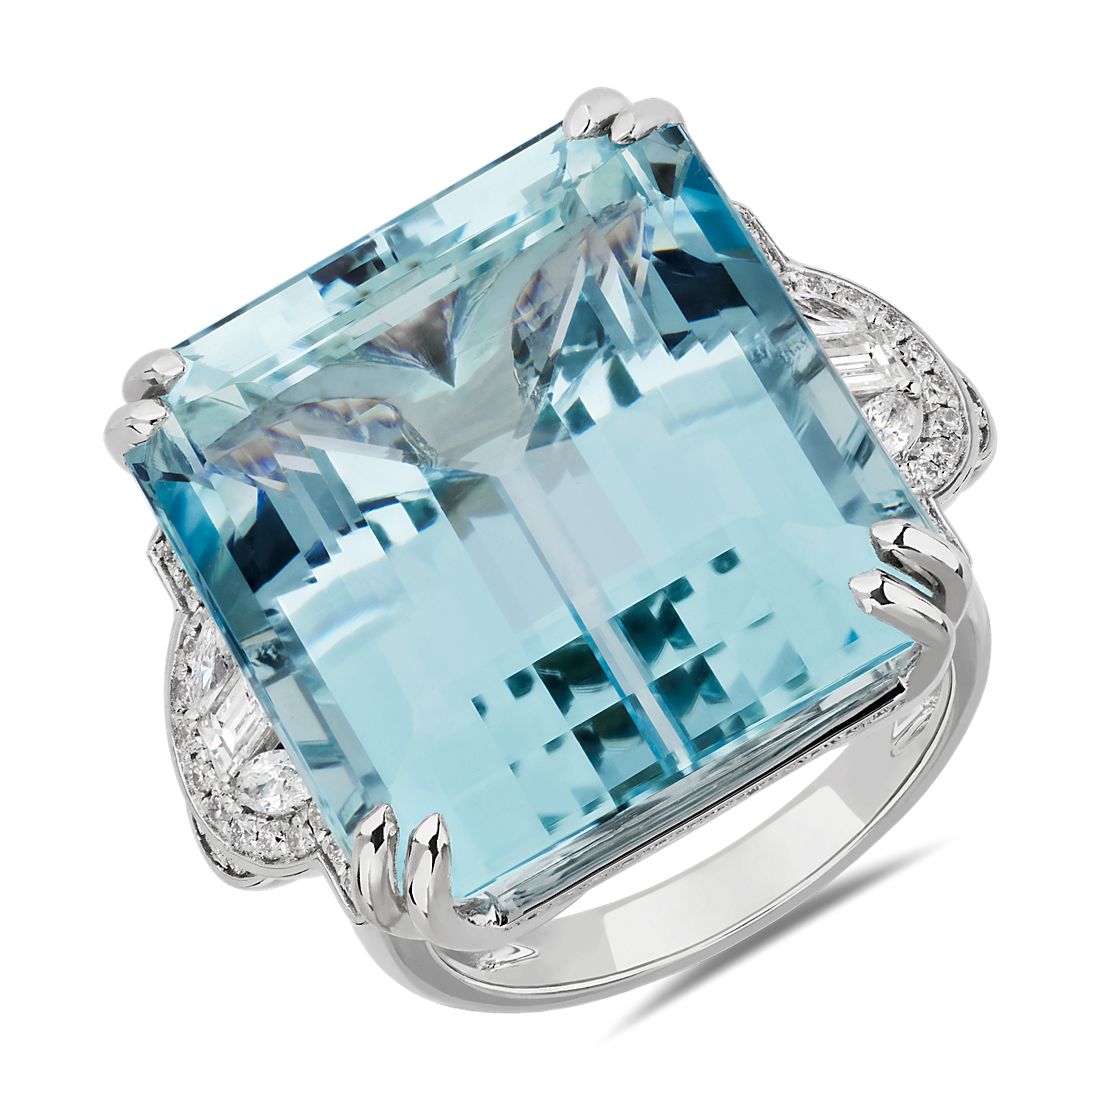 Aquamarine and Diamond Ring in 18k White Gold